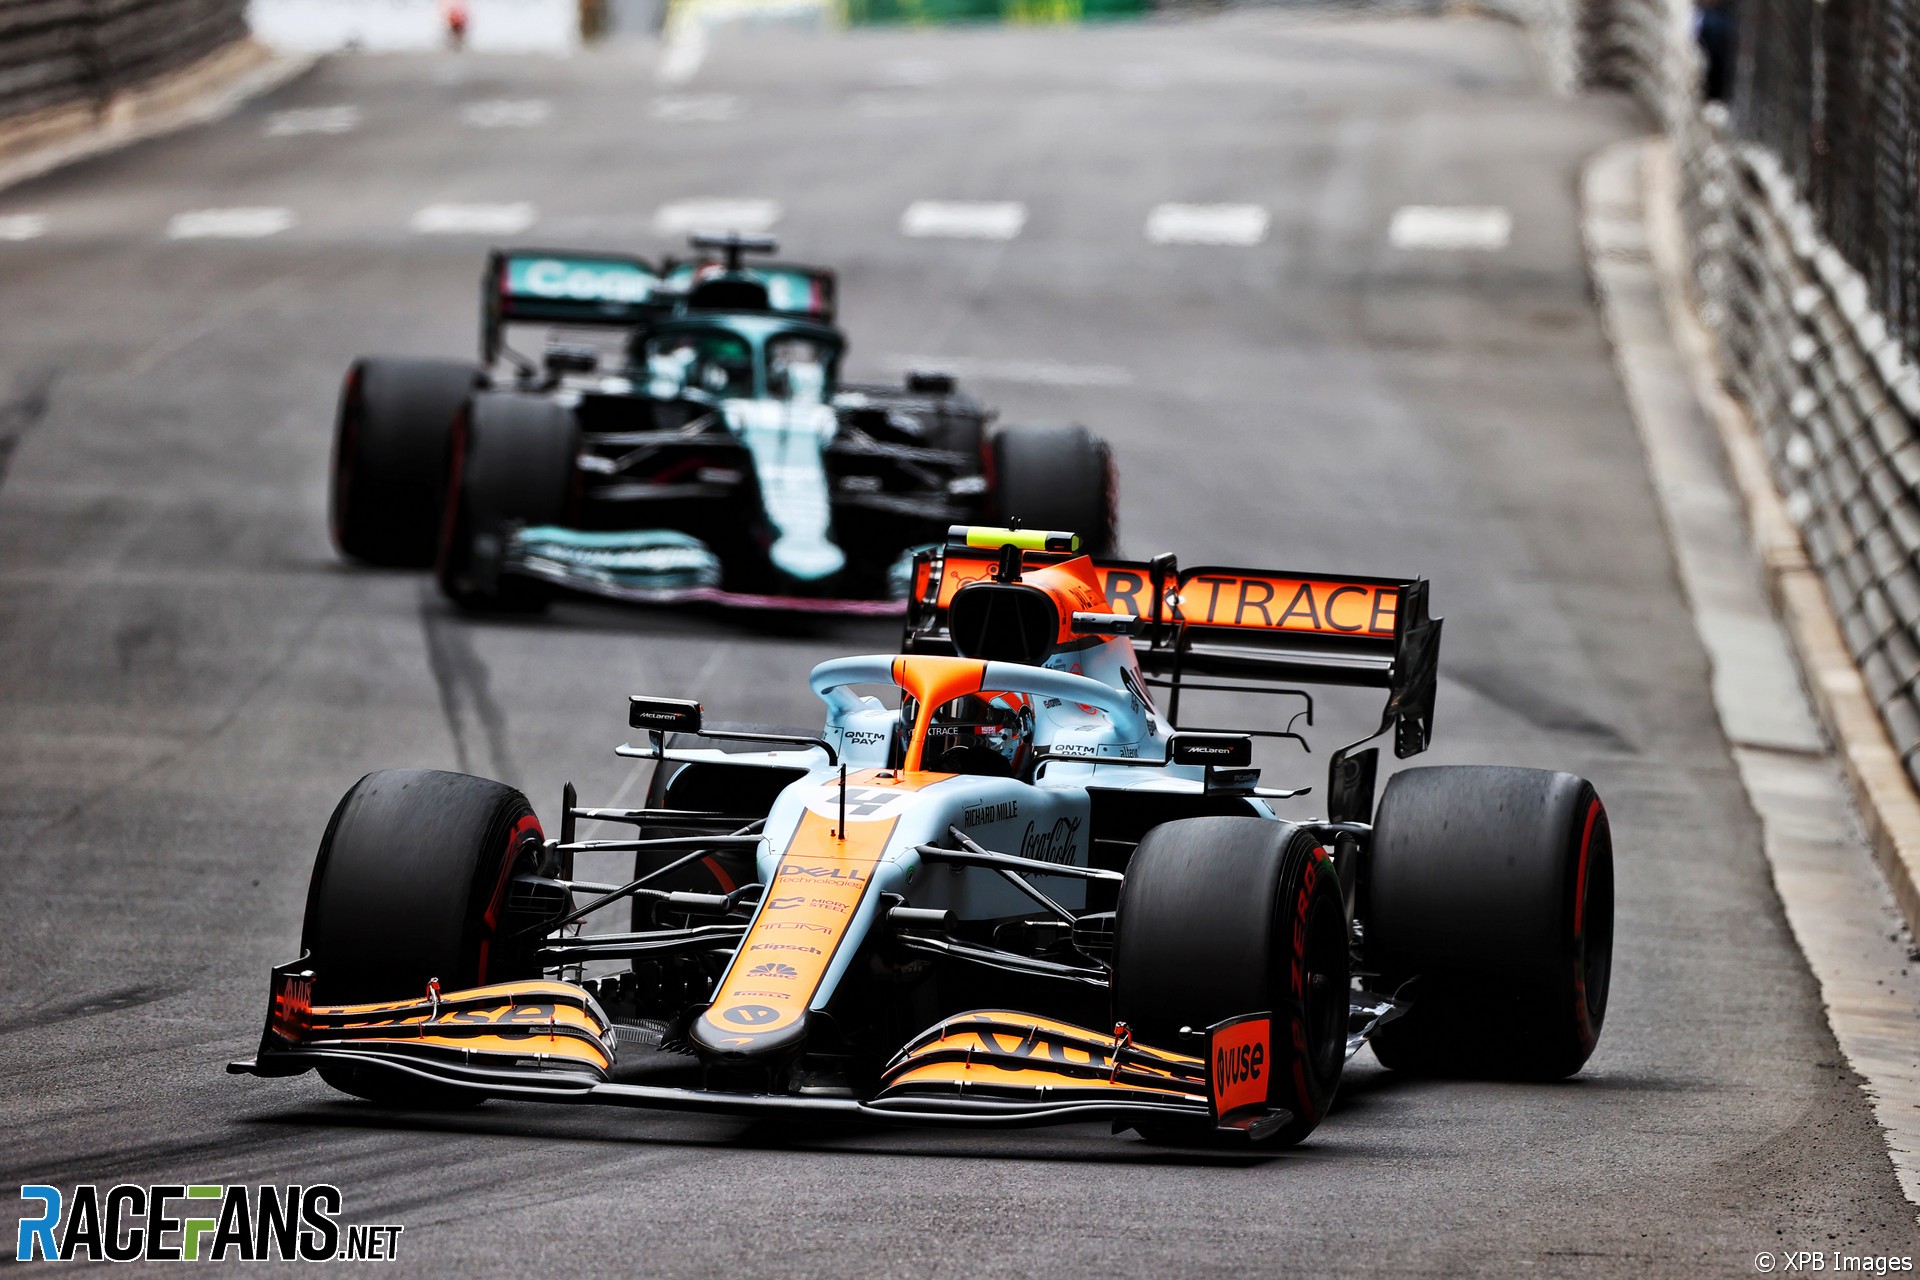 Lando Norris, McLaren, Monaco, 2021 · RaceFans